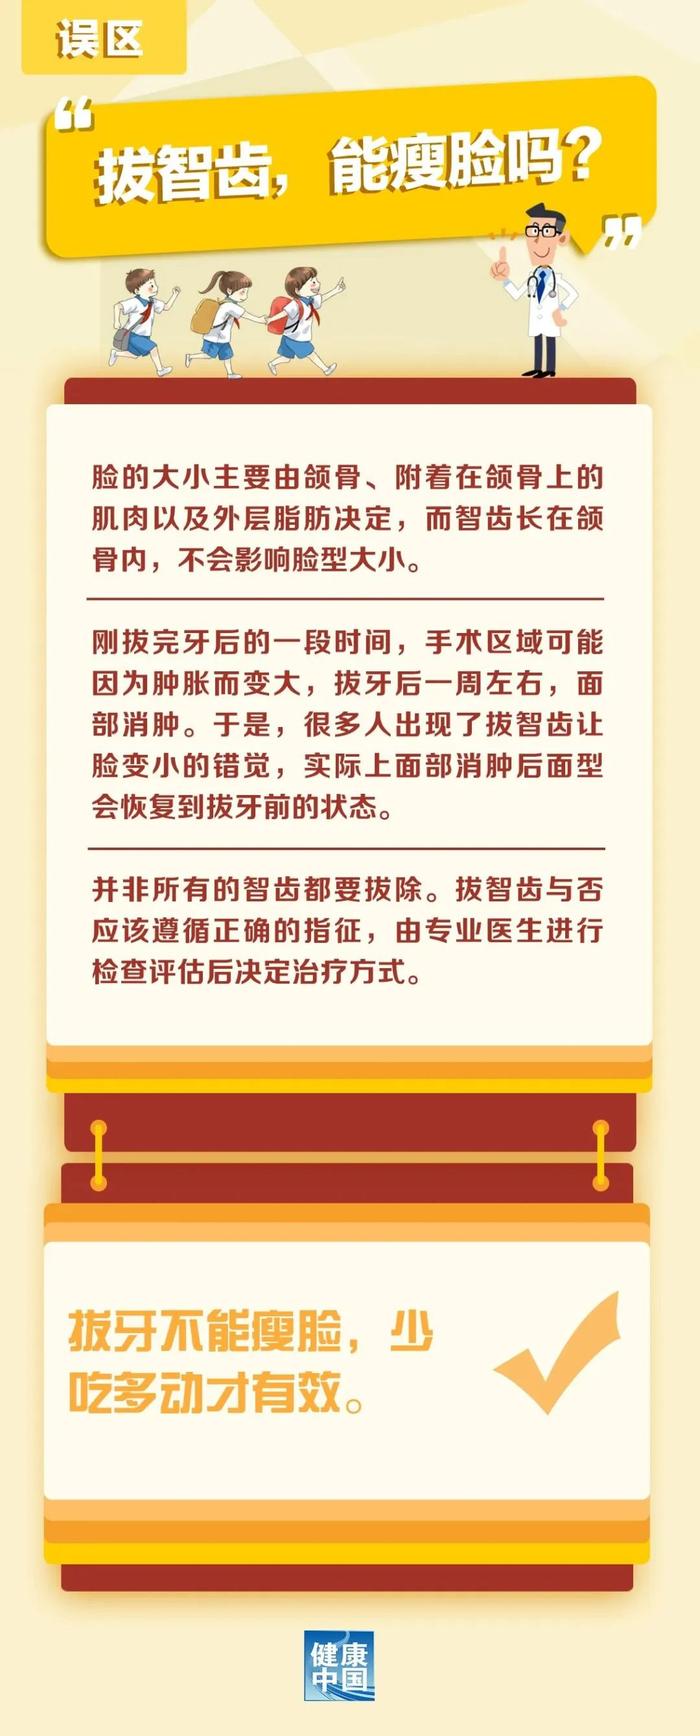 知晓｜25~35℃，北京新学年开学、寒暑假时间安排公布！北京多家医院开设晚间门诊！